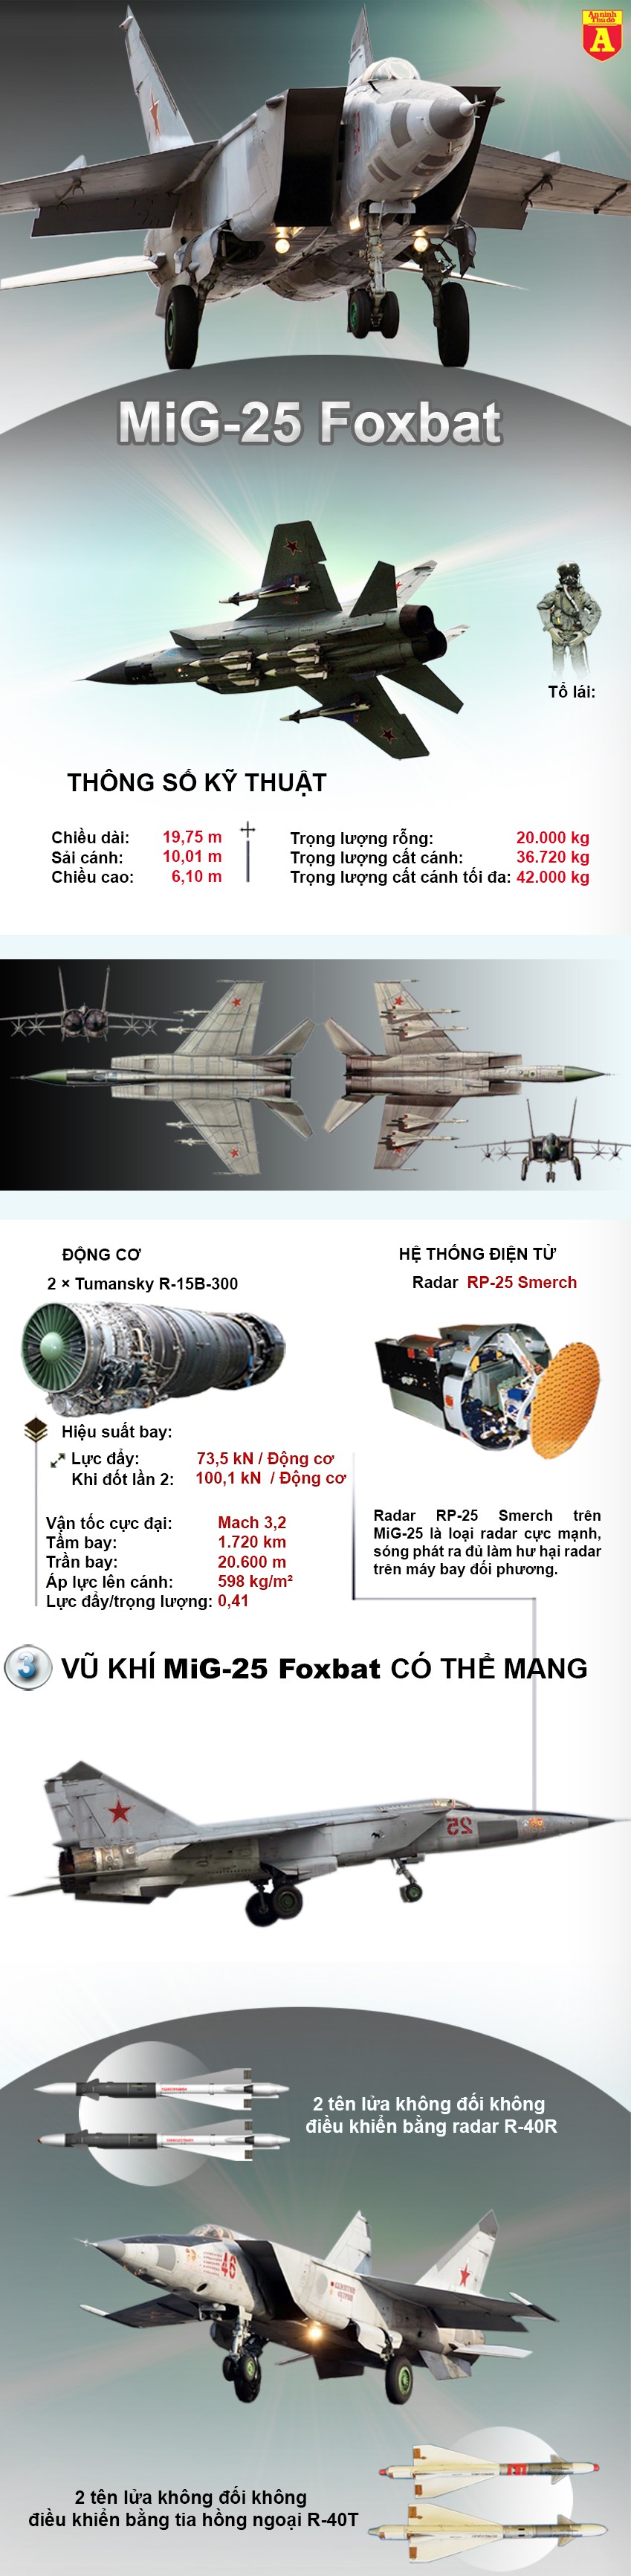 [Infographic] Bị Israel đánh rát, Syria bất ngờ gọi tái ngũ "ma tốc độ MiG-25" ảnh 2